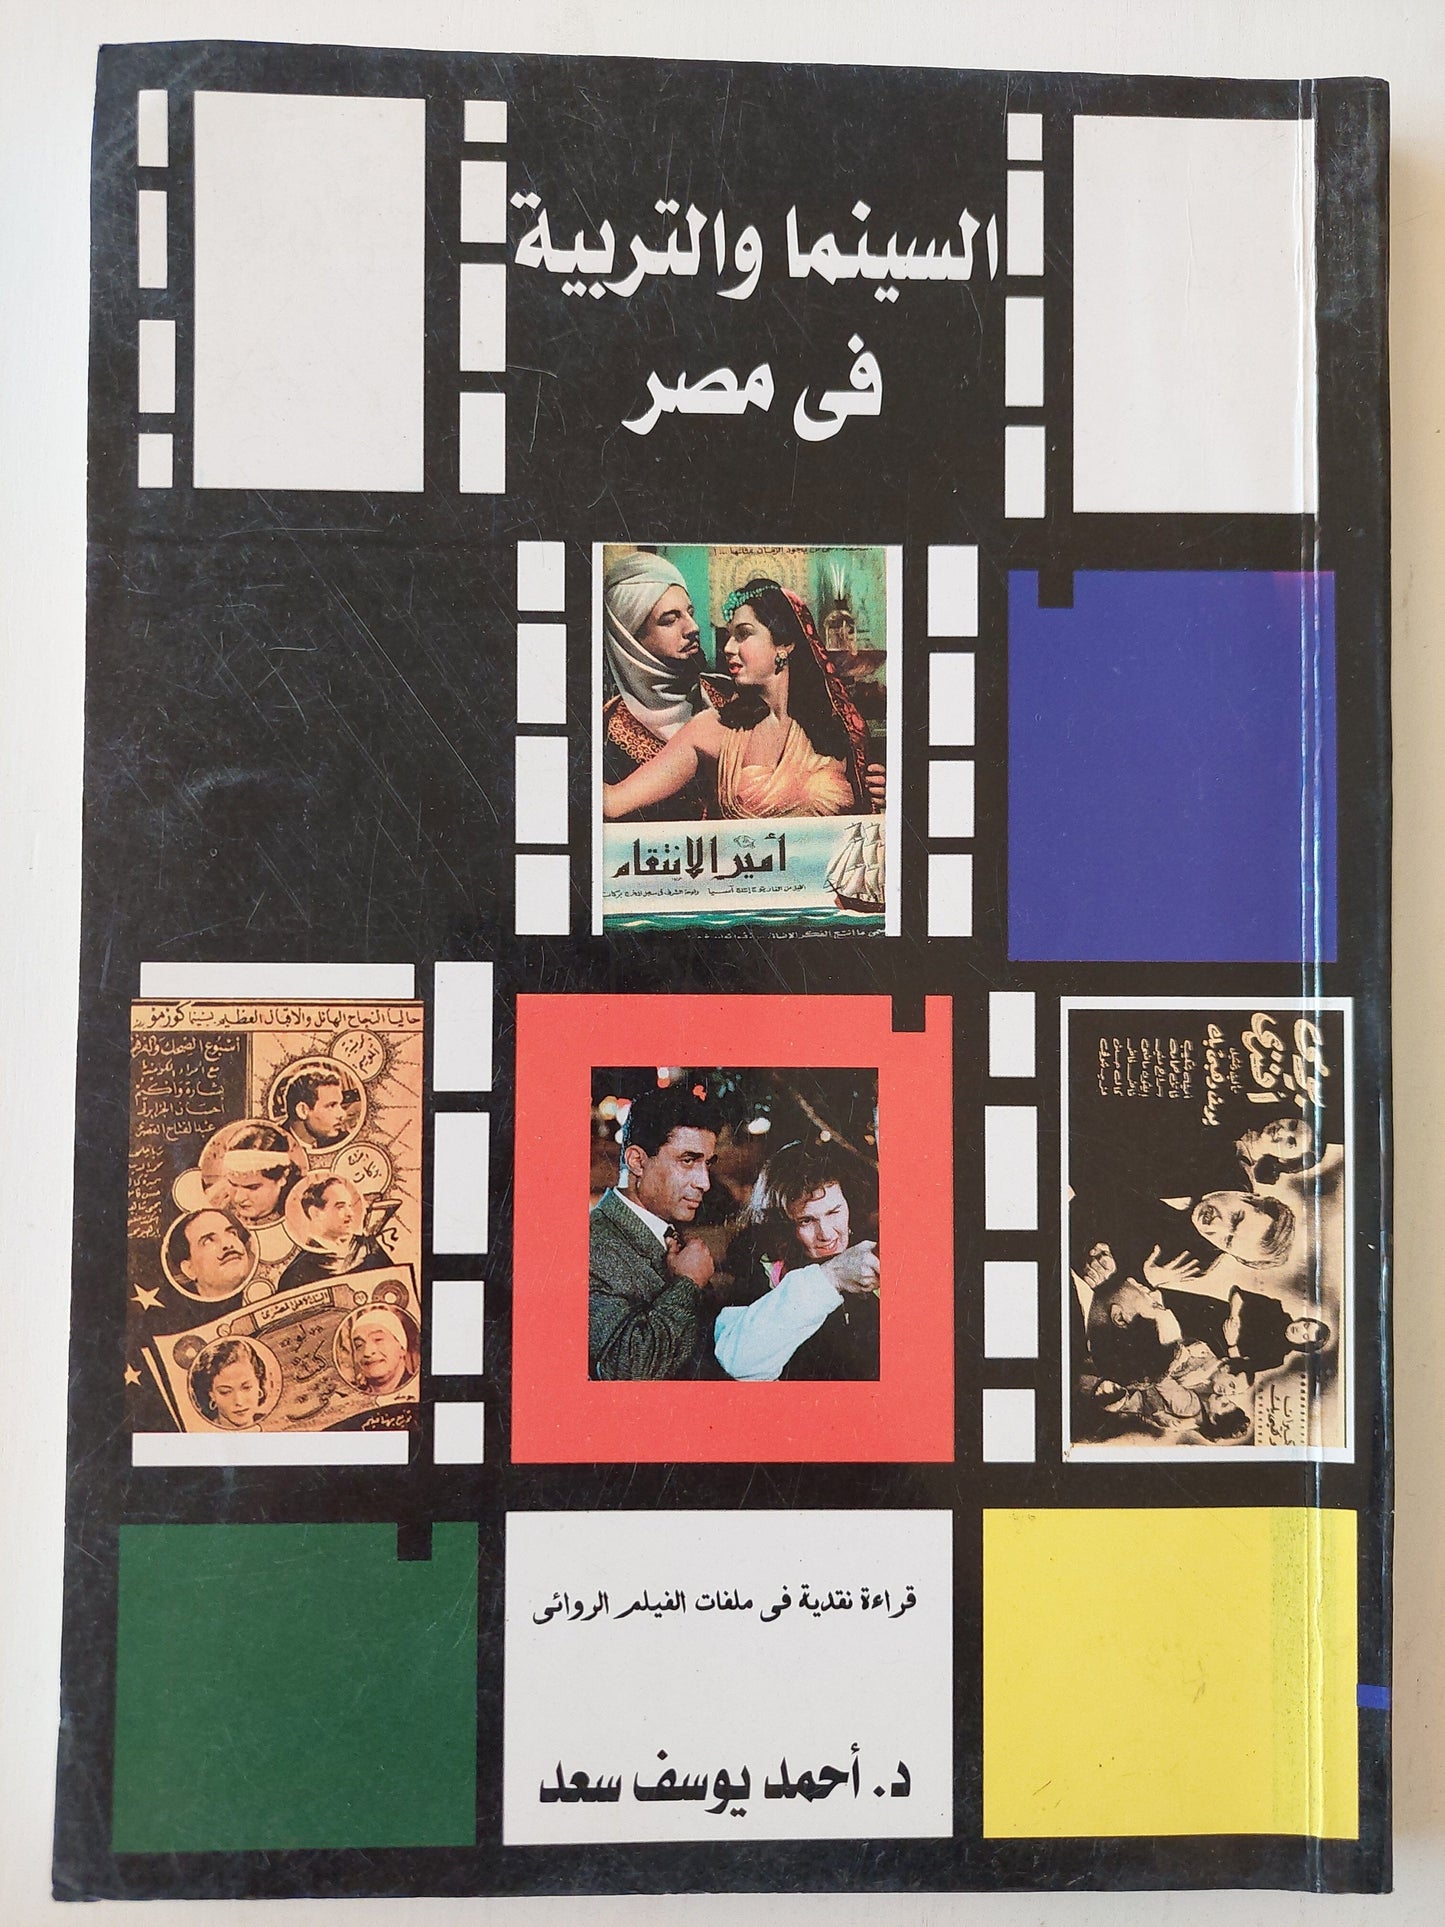 السينما والتربية في مصر : قراءة نقدية في ملفات الفيلم الروائي كتاب المكتبة الفلسفية 